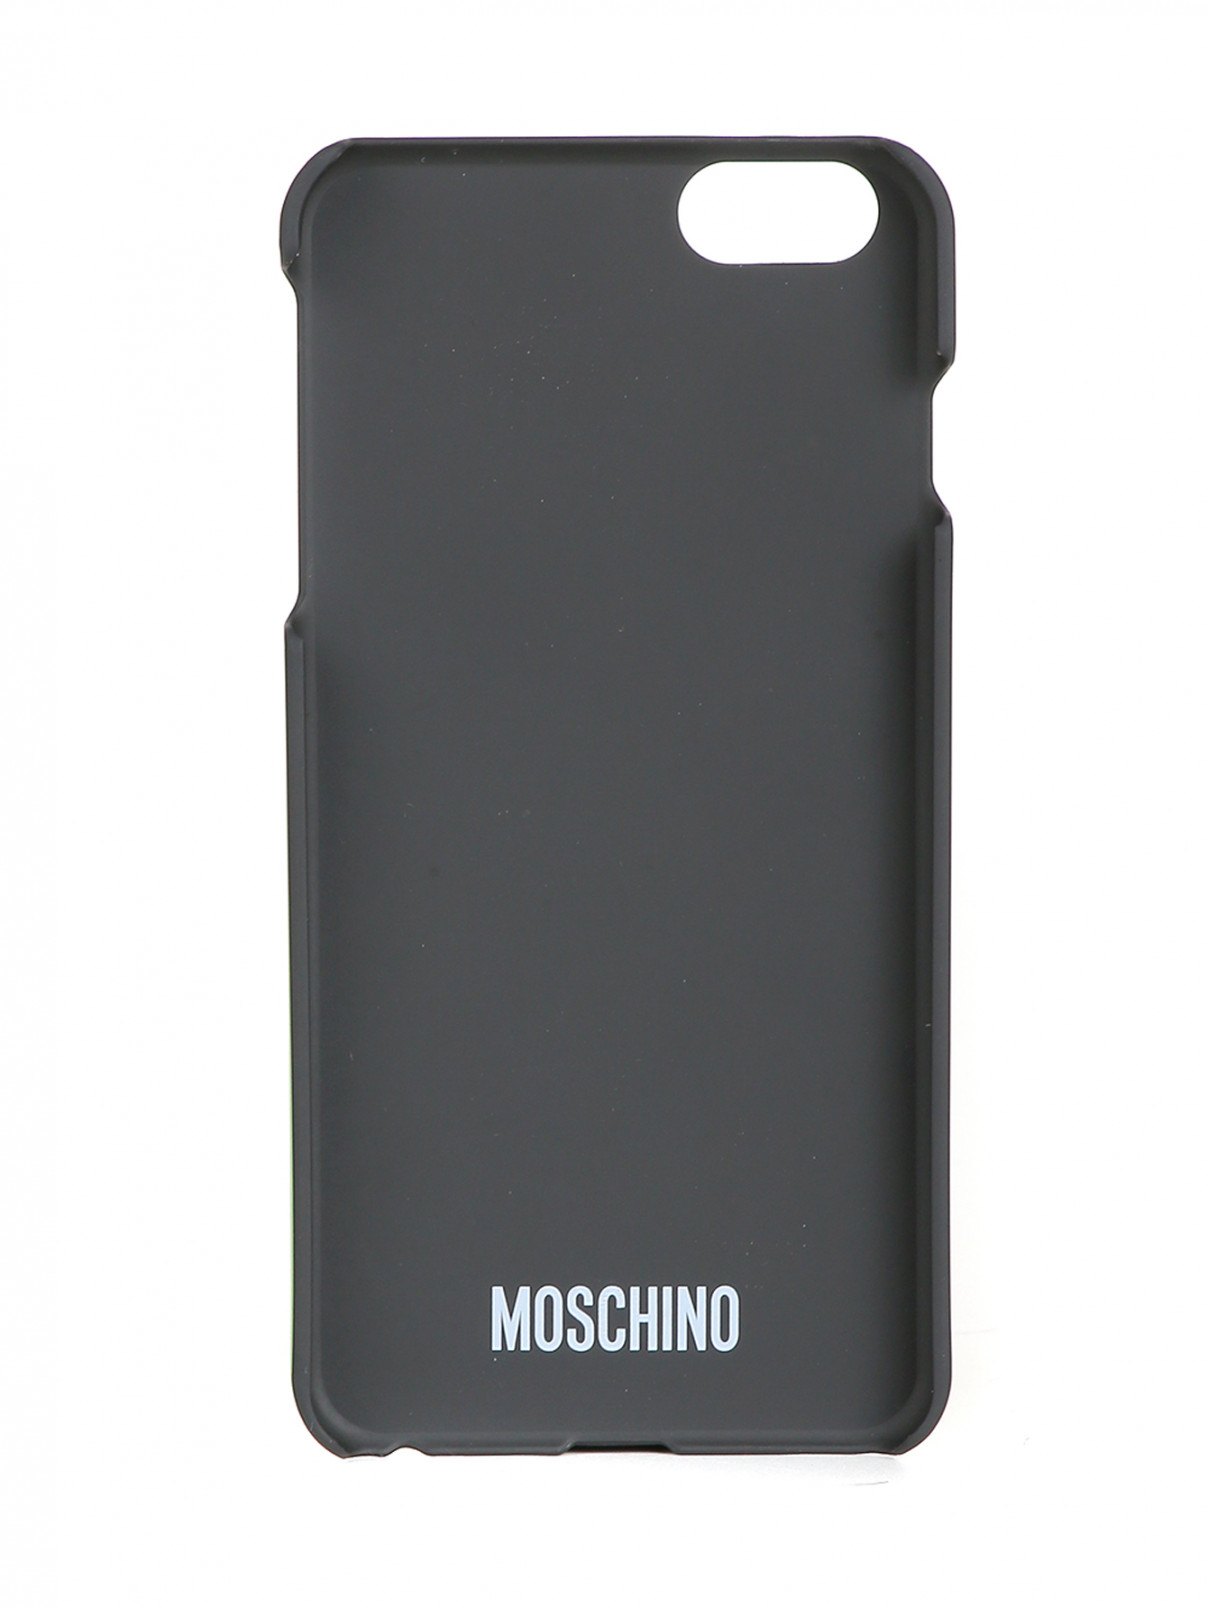 moschino iphone 6